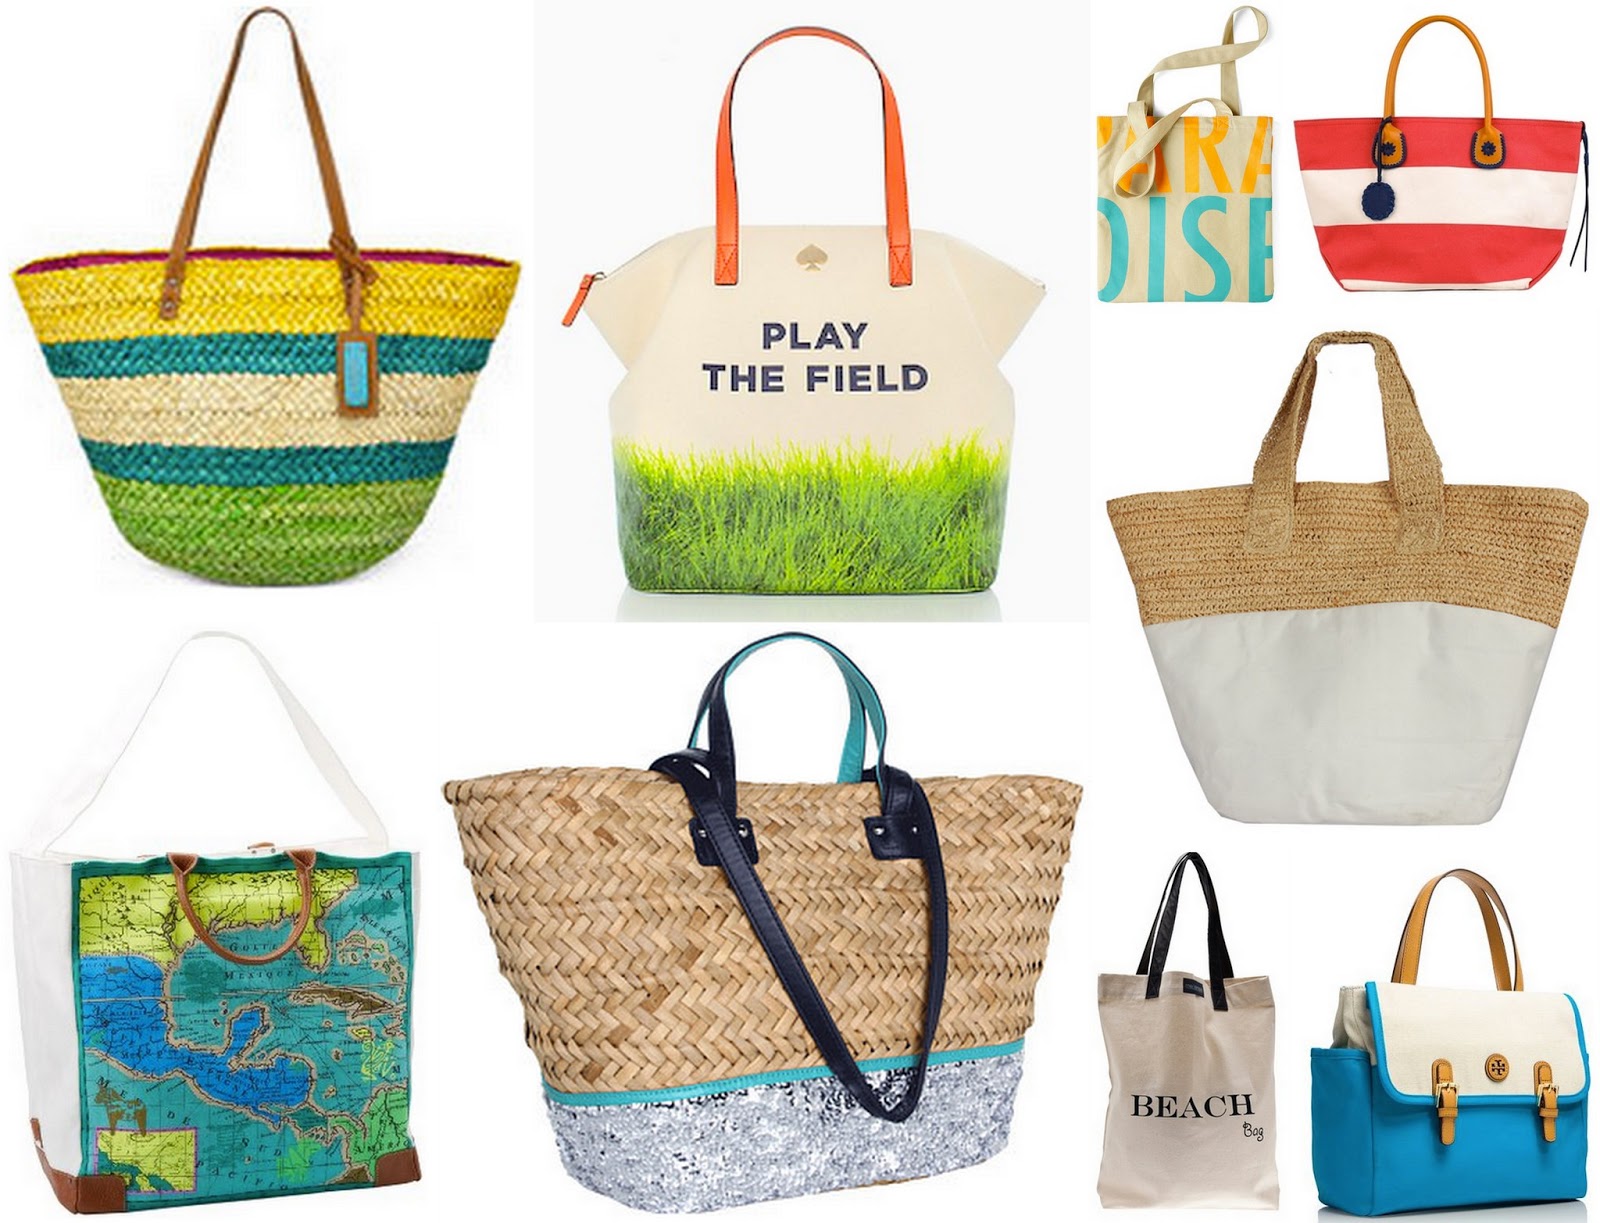 P e w t e r & P u d d l e s: The Best Beach Bags